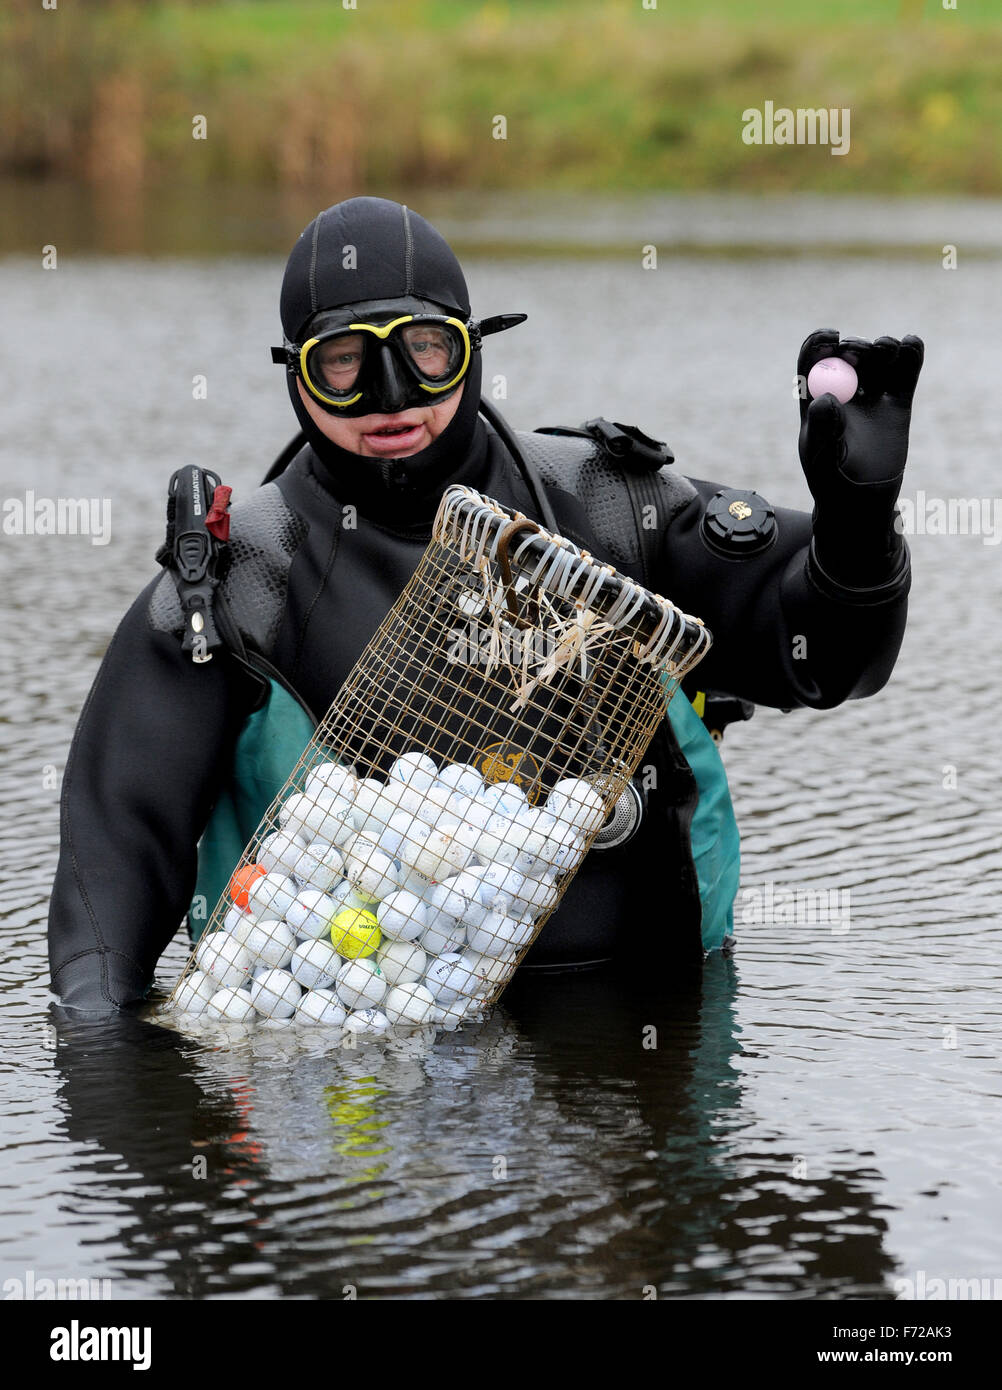 Palla da golf subacqueo Ralf Oestmann detiene il self-made cesti riempiti  con palline da golf nelle sue mani su un campo da golf a Bremen, Germania,  10 novembre 2015. Oestmann pesci per